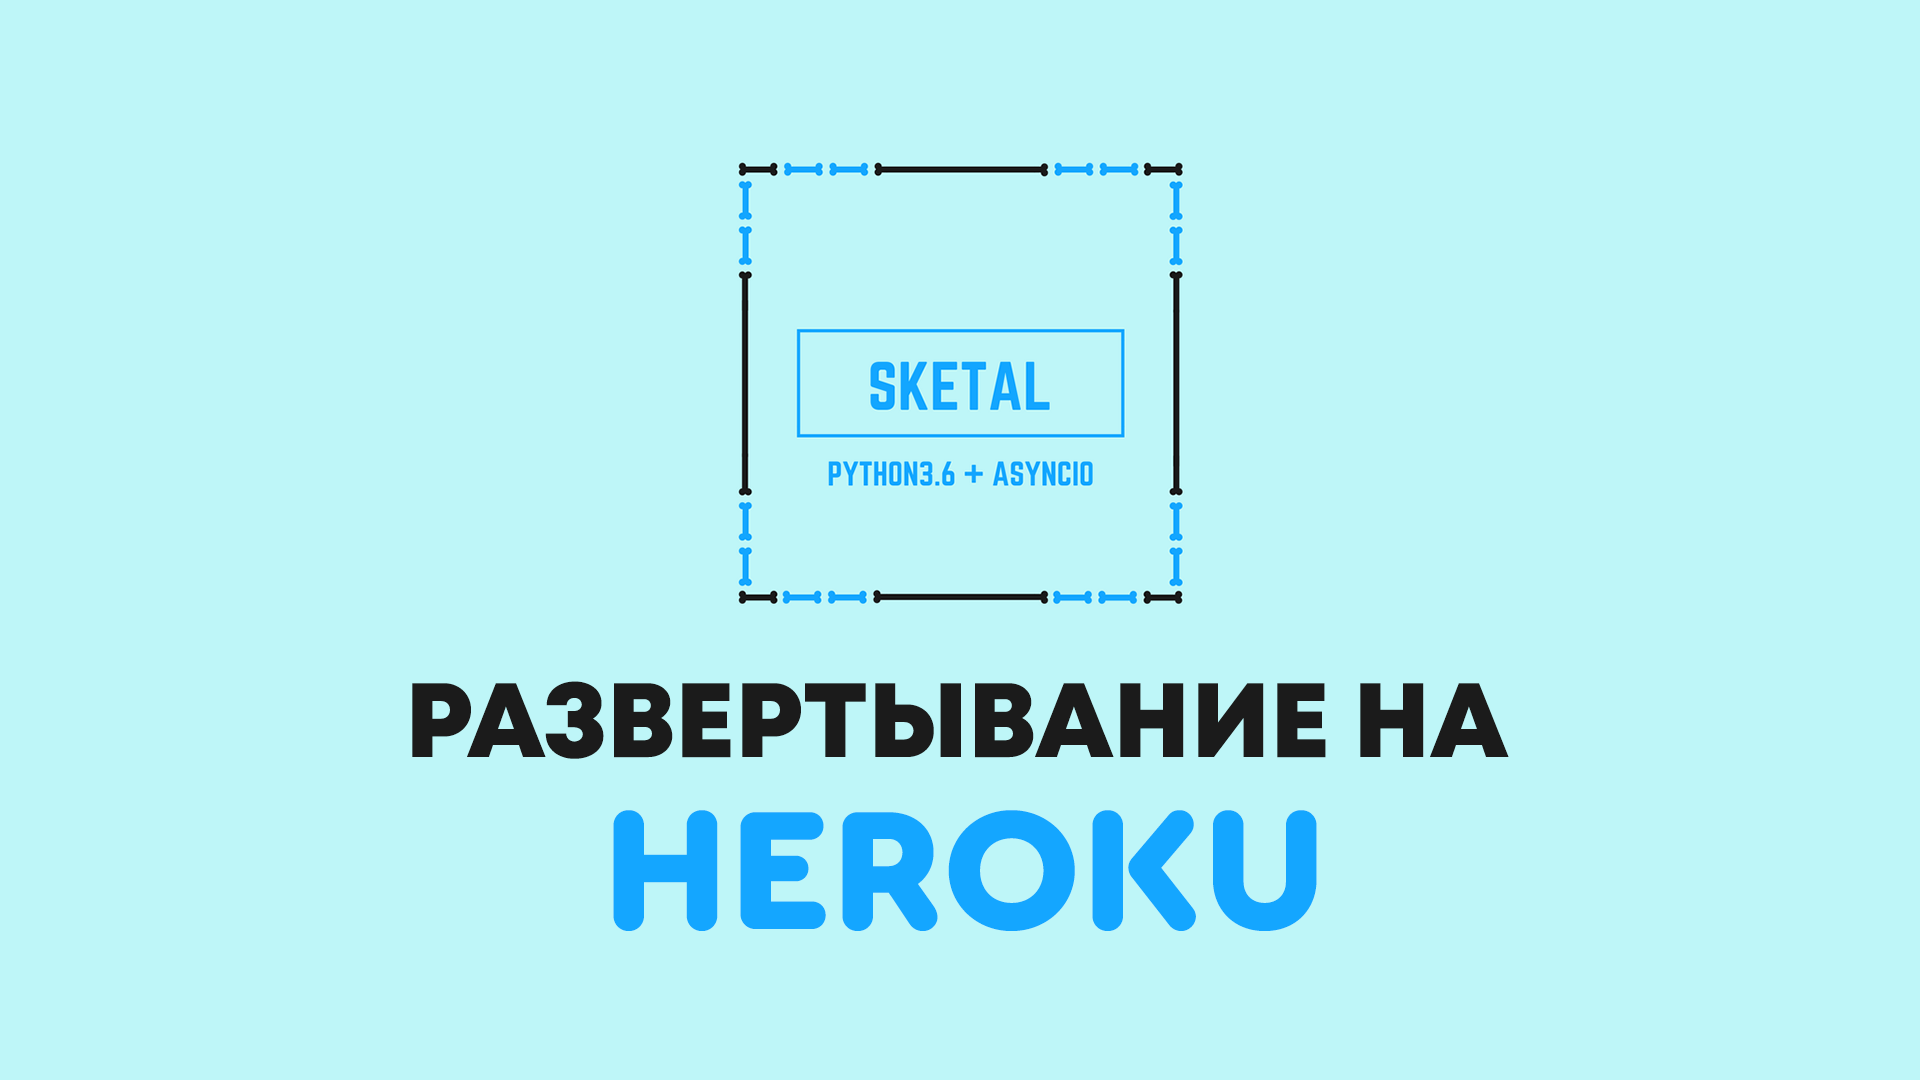 Развертывание Python бота Sketal для ВКонтакте на Heroku